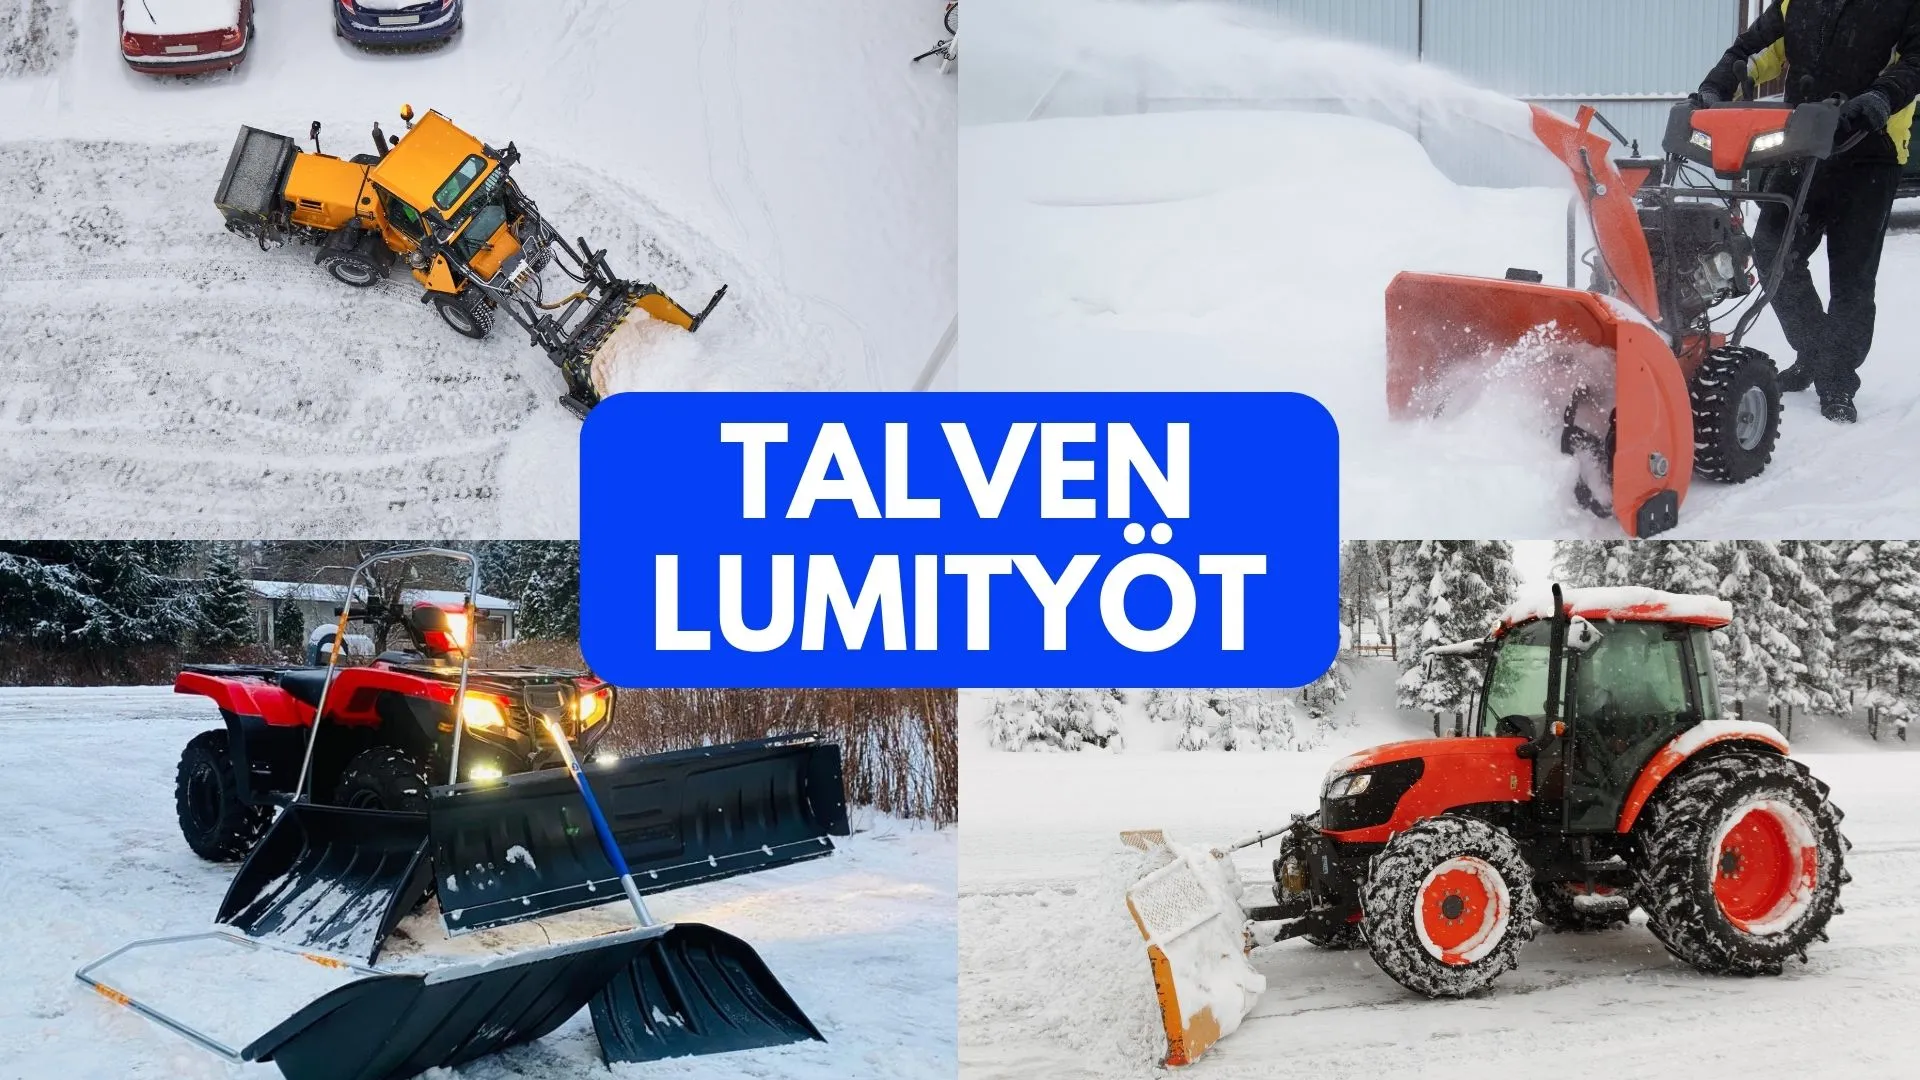 Kuvassa esitetään talven lumityöt eri lumityövälineillä. Kuva kertoo, että lumityöt voidaan tehdä lumikolalla, lumilingolla, mönkijällä tai traktorilla.